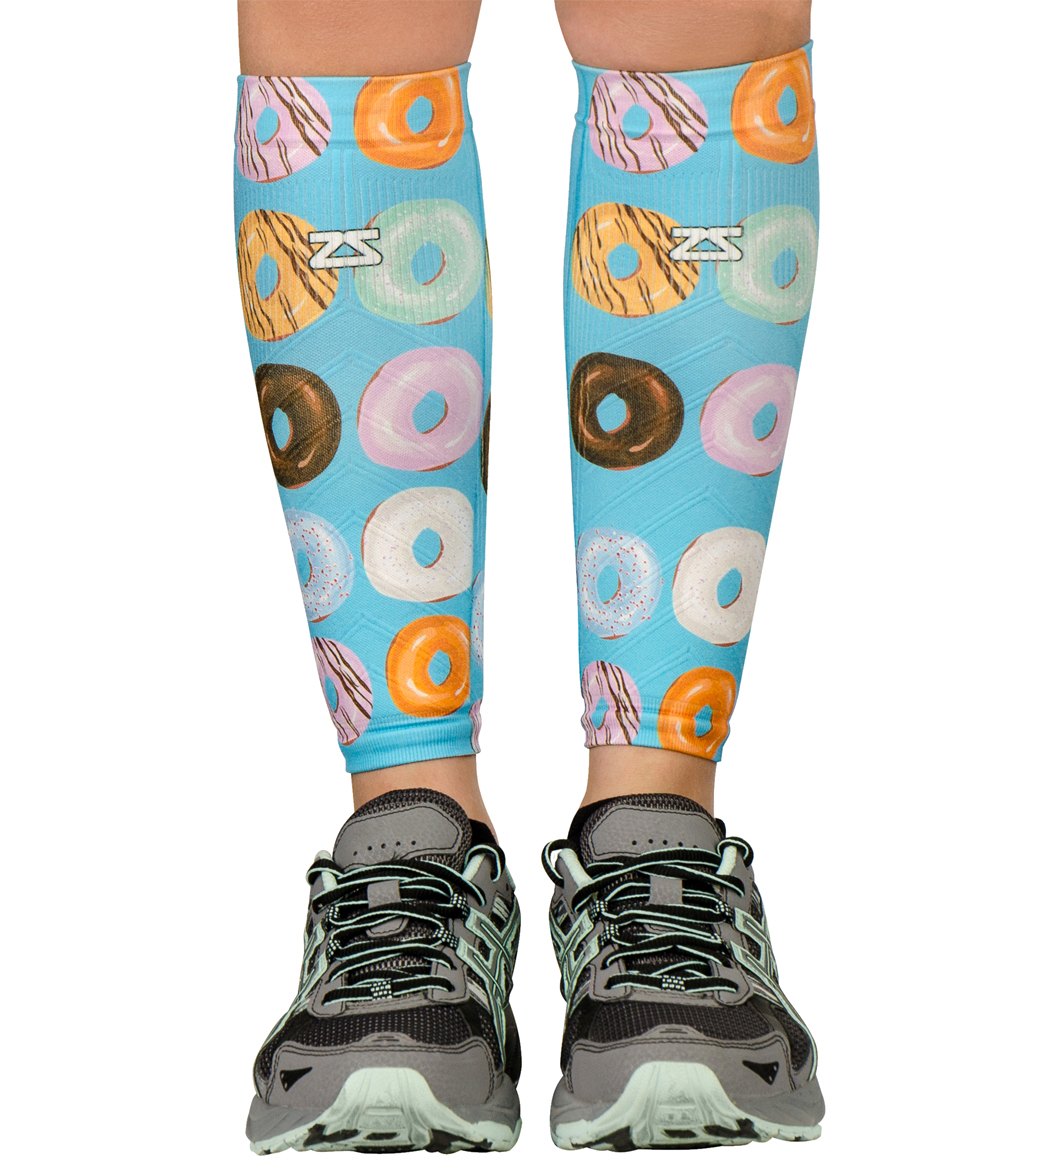 Zensah Donut Compression Leg Sleeves Pair - Aqua L/Xl - Swimoutlet.com